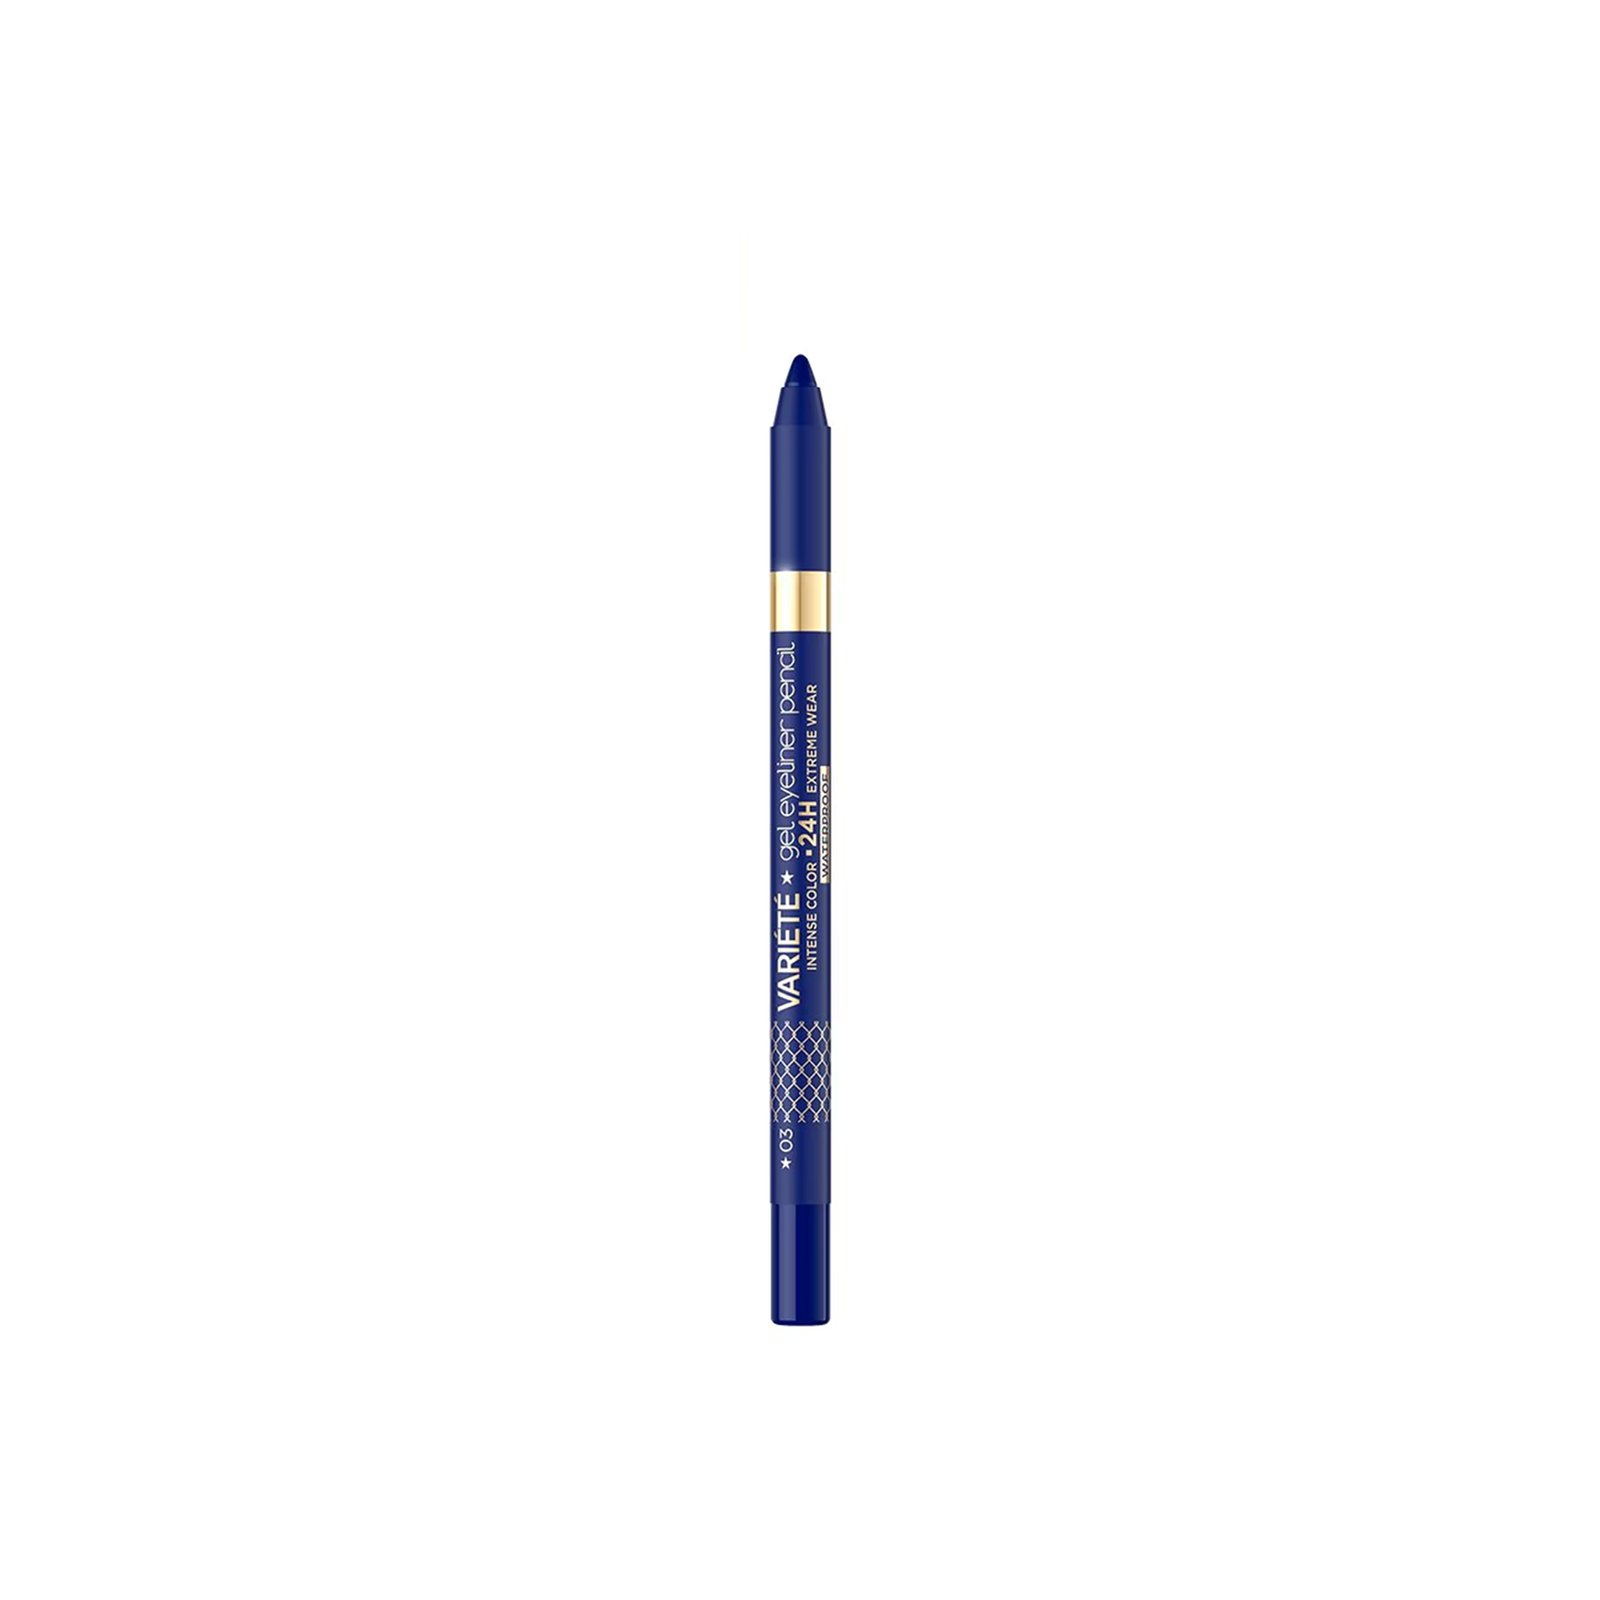 Eveline Cosmetics Variété Gel Eyeliner Pencil 24h Waterproof 03 Blue